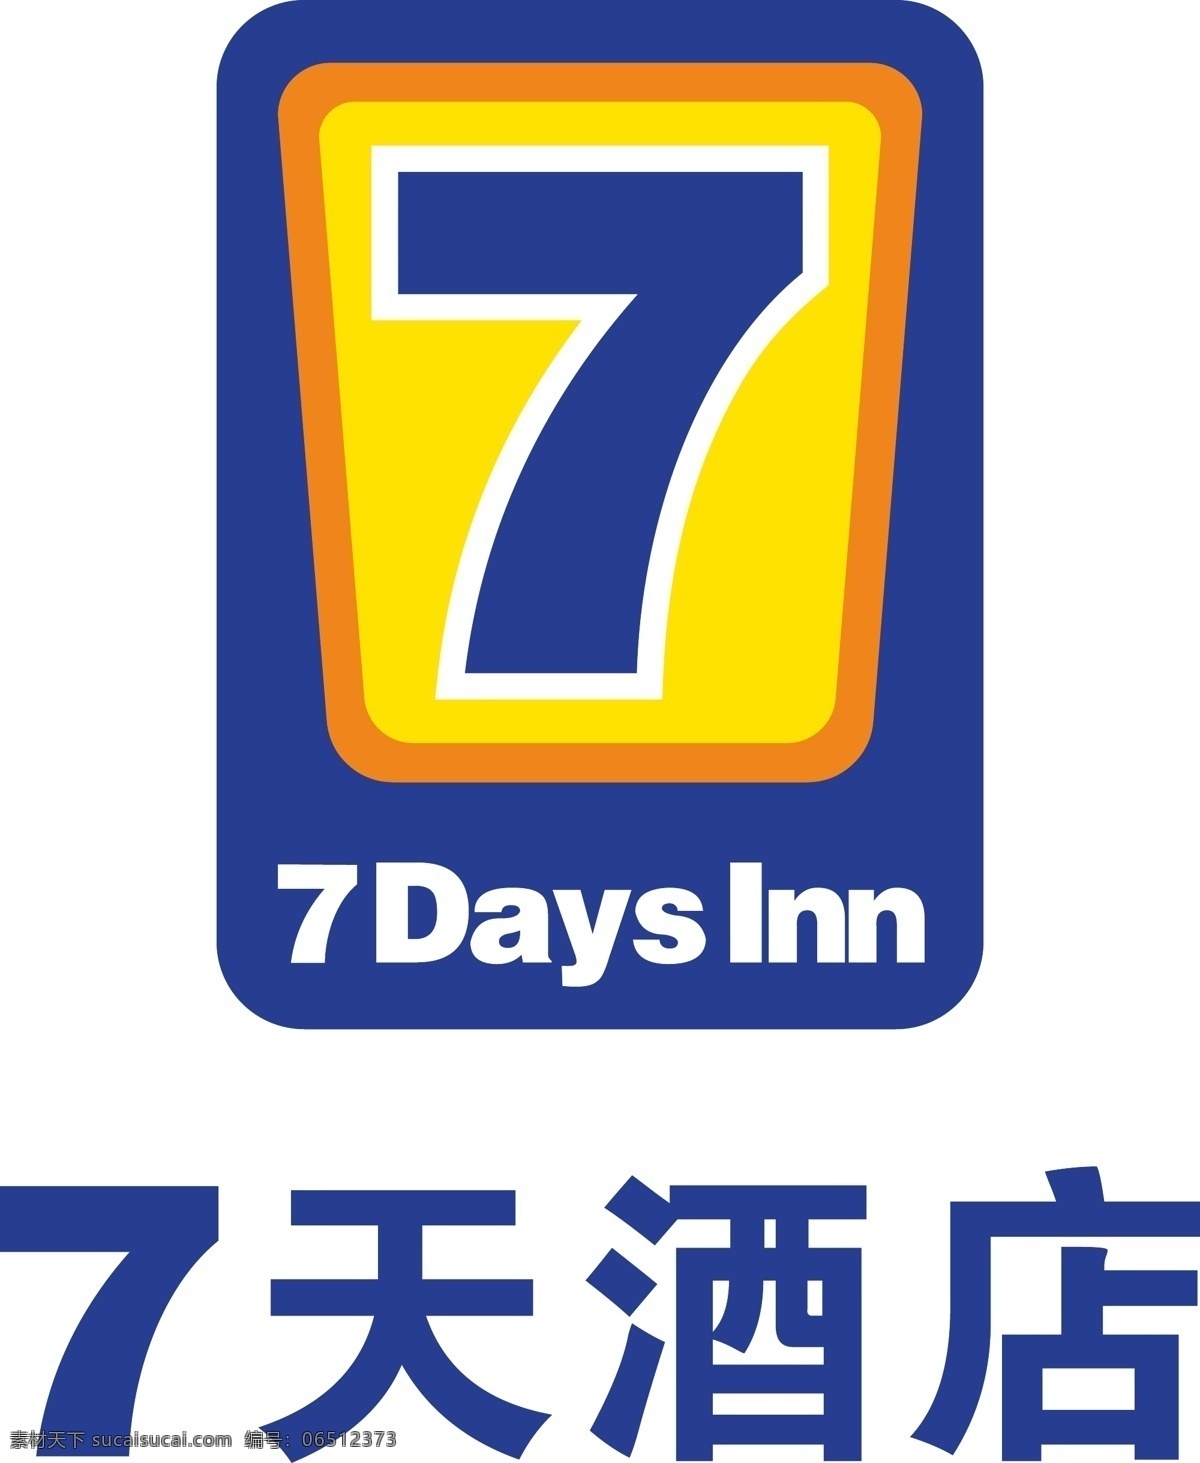 7天酒店 days inn 天 酒店 logo 7天酒店标 7天酒店图 7天 7天标 7天图标 7天logo 标志图标 企业 标志